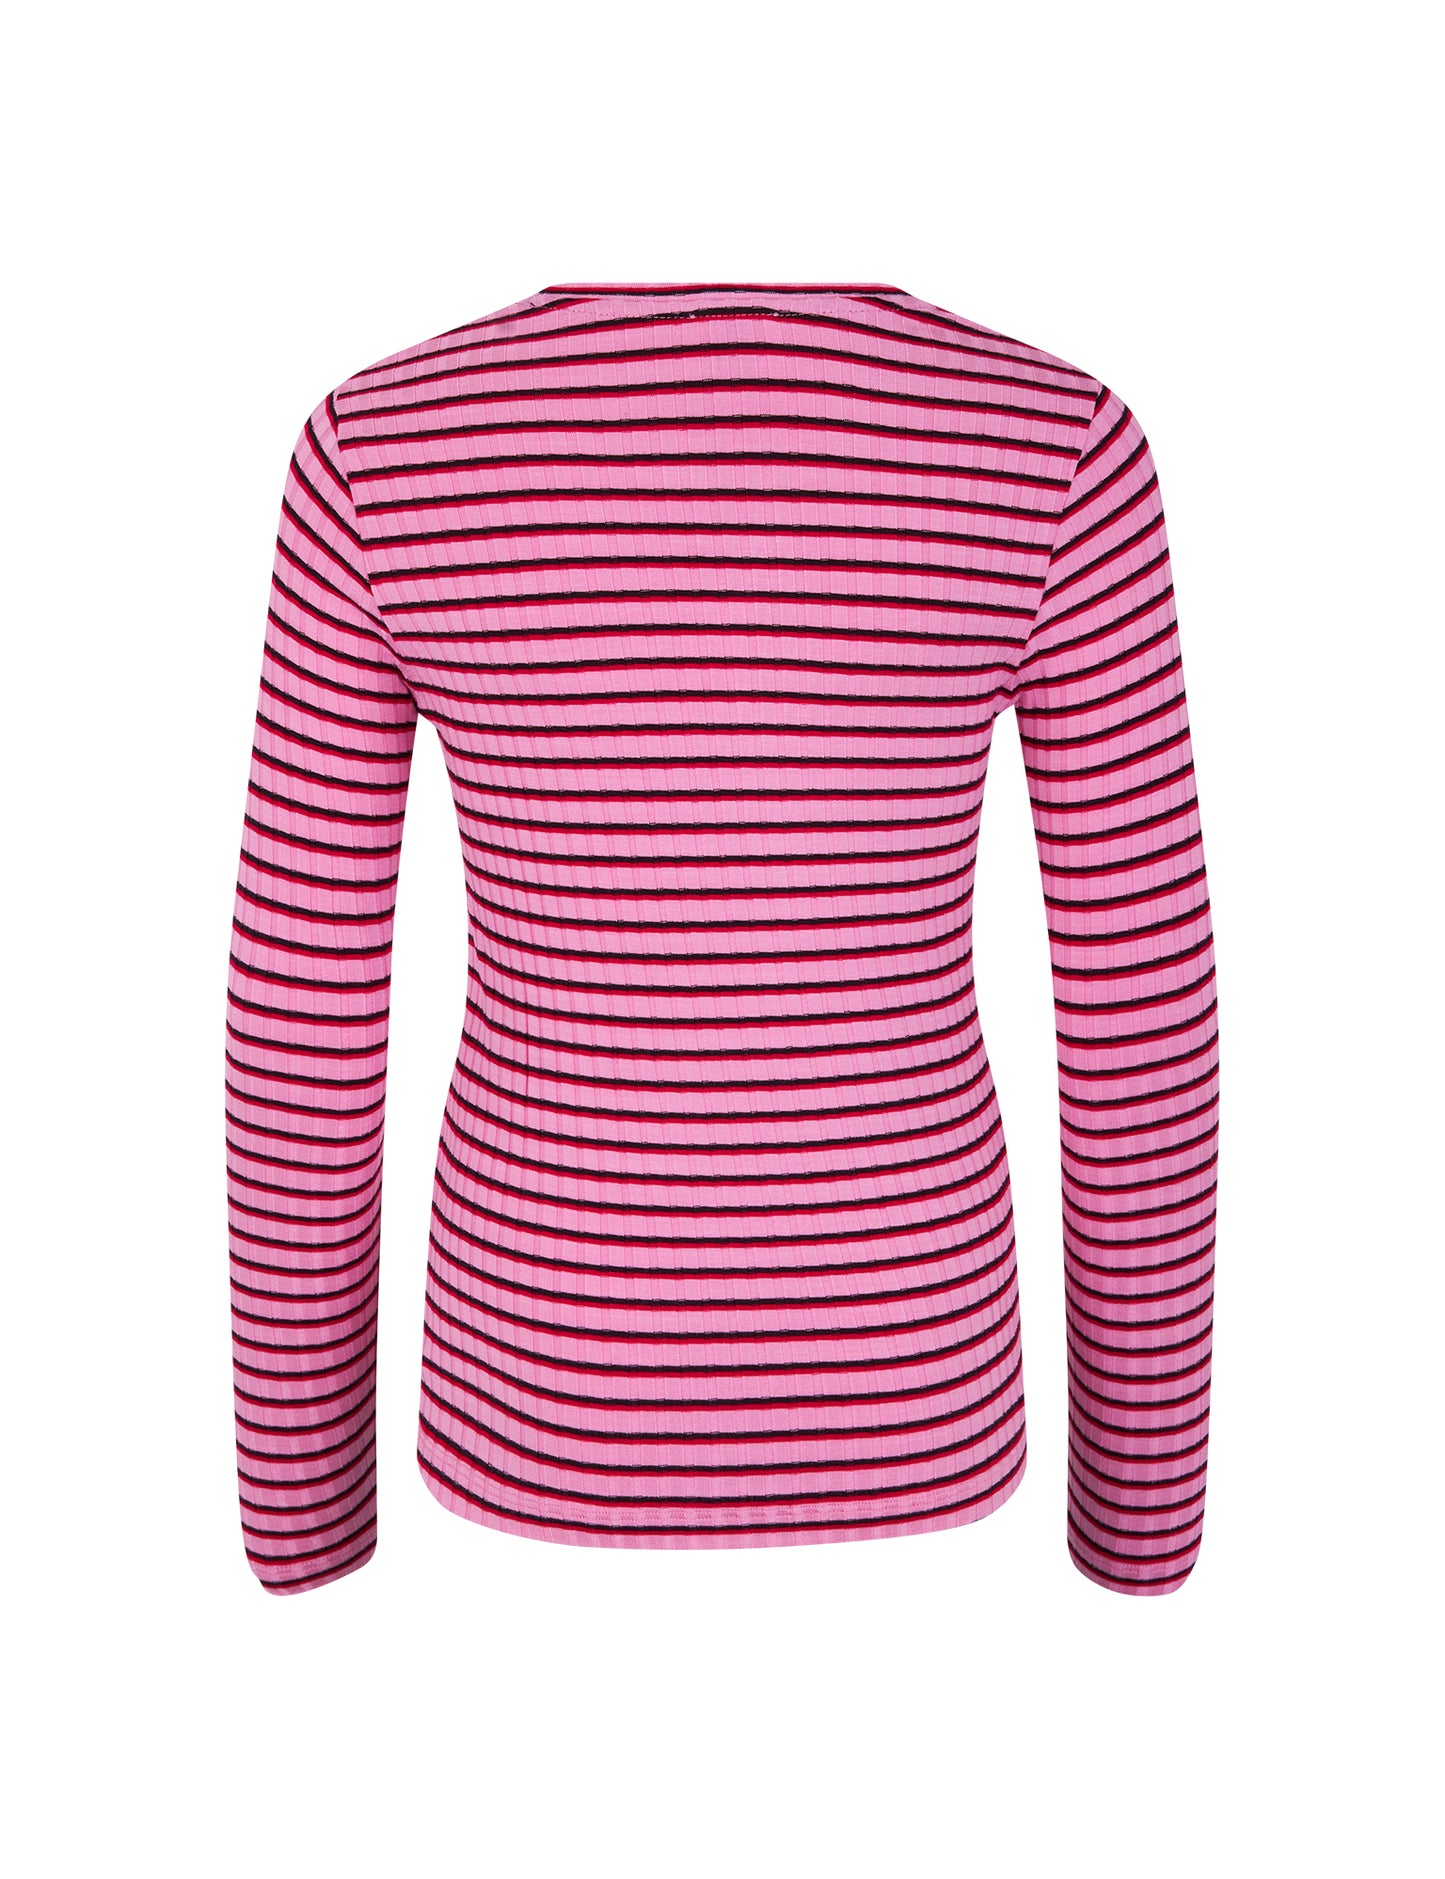 5x5 Stripe Talika Top, 5x5 Stripe/Begonia Pink